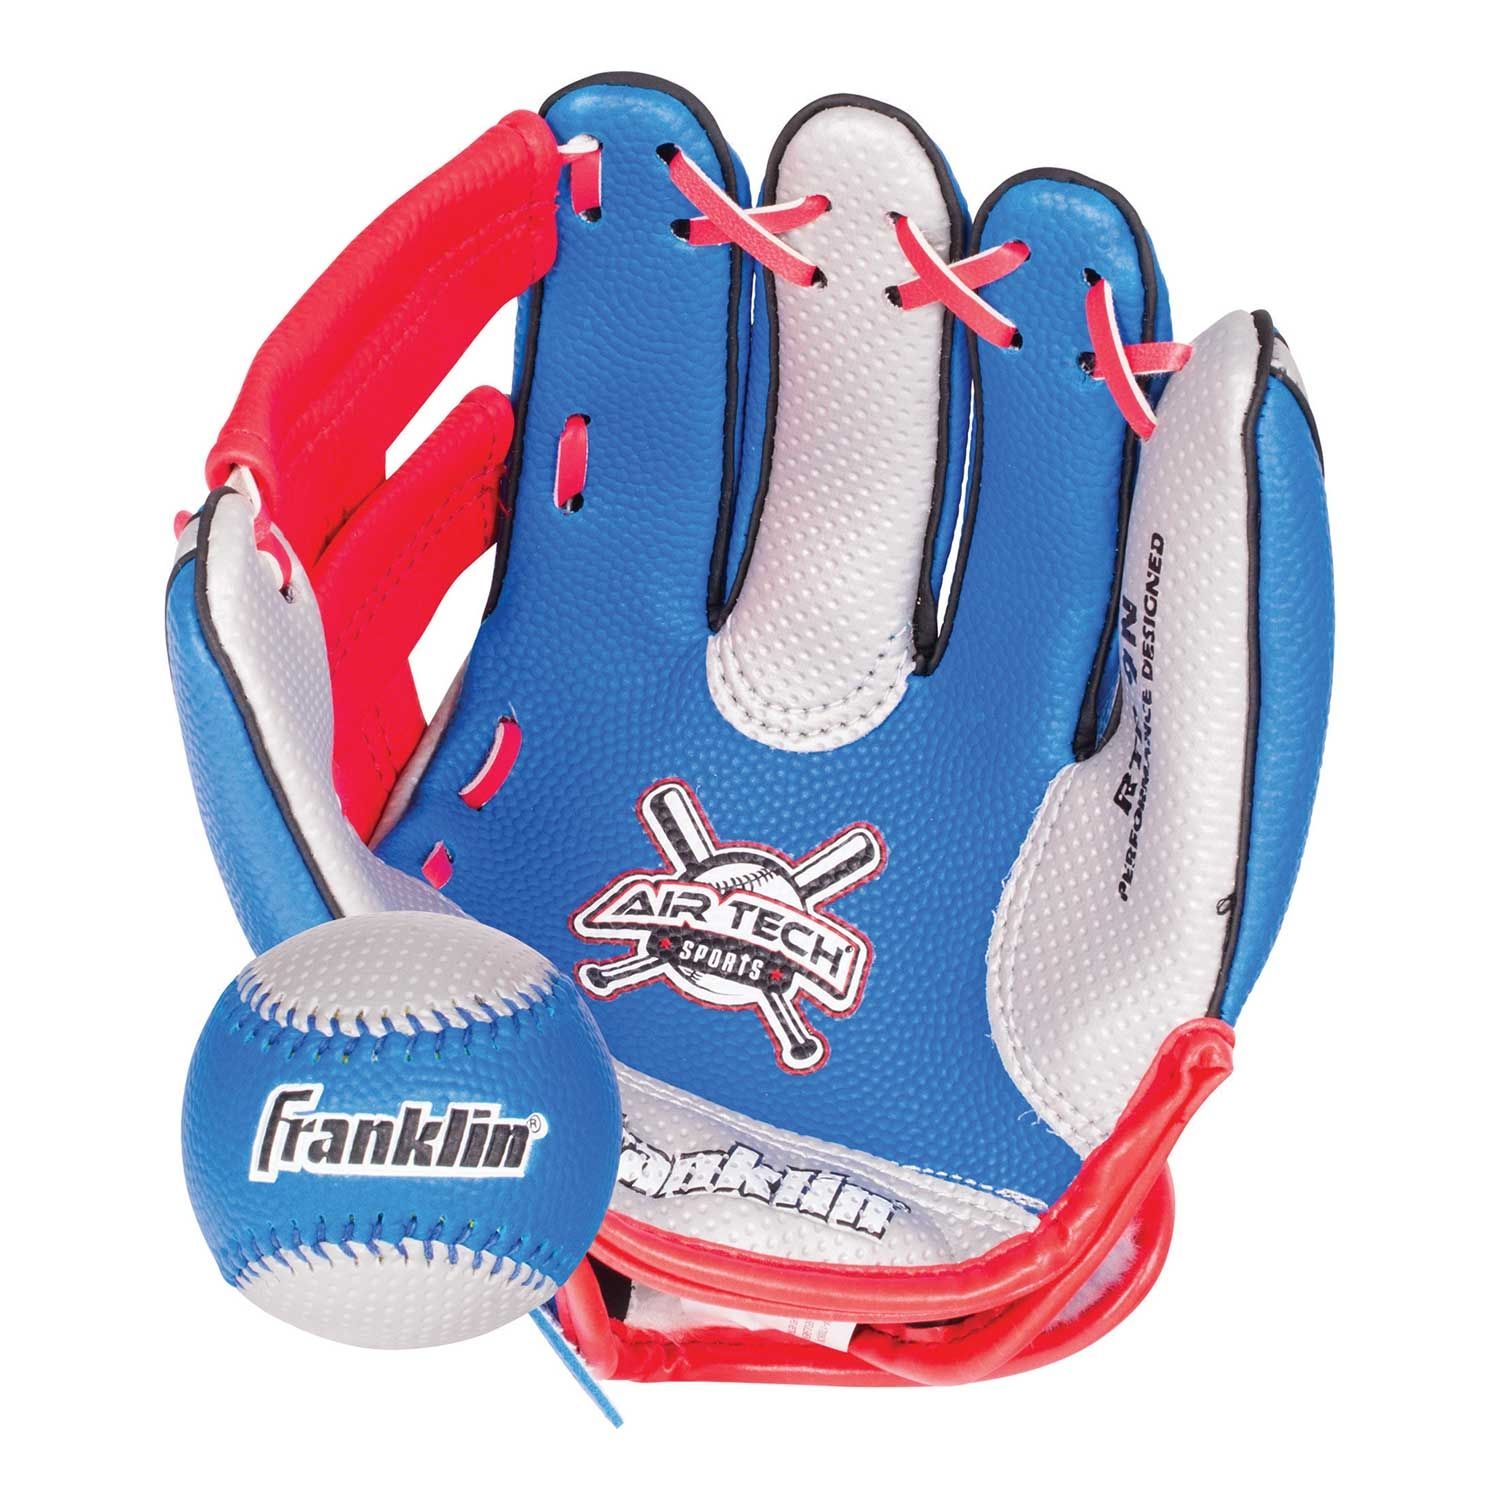 Franklin Airtech Soft Foam Baseball Glove Youth Fielding Glove